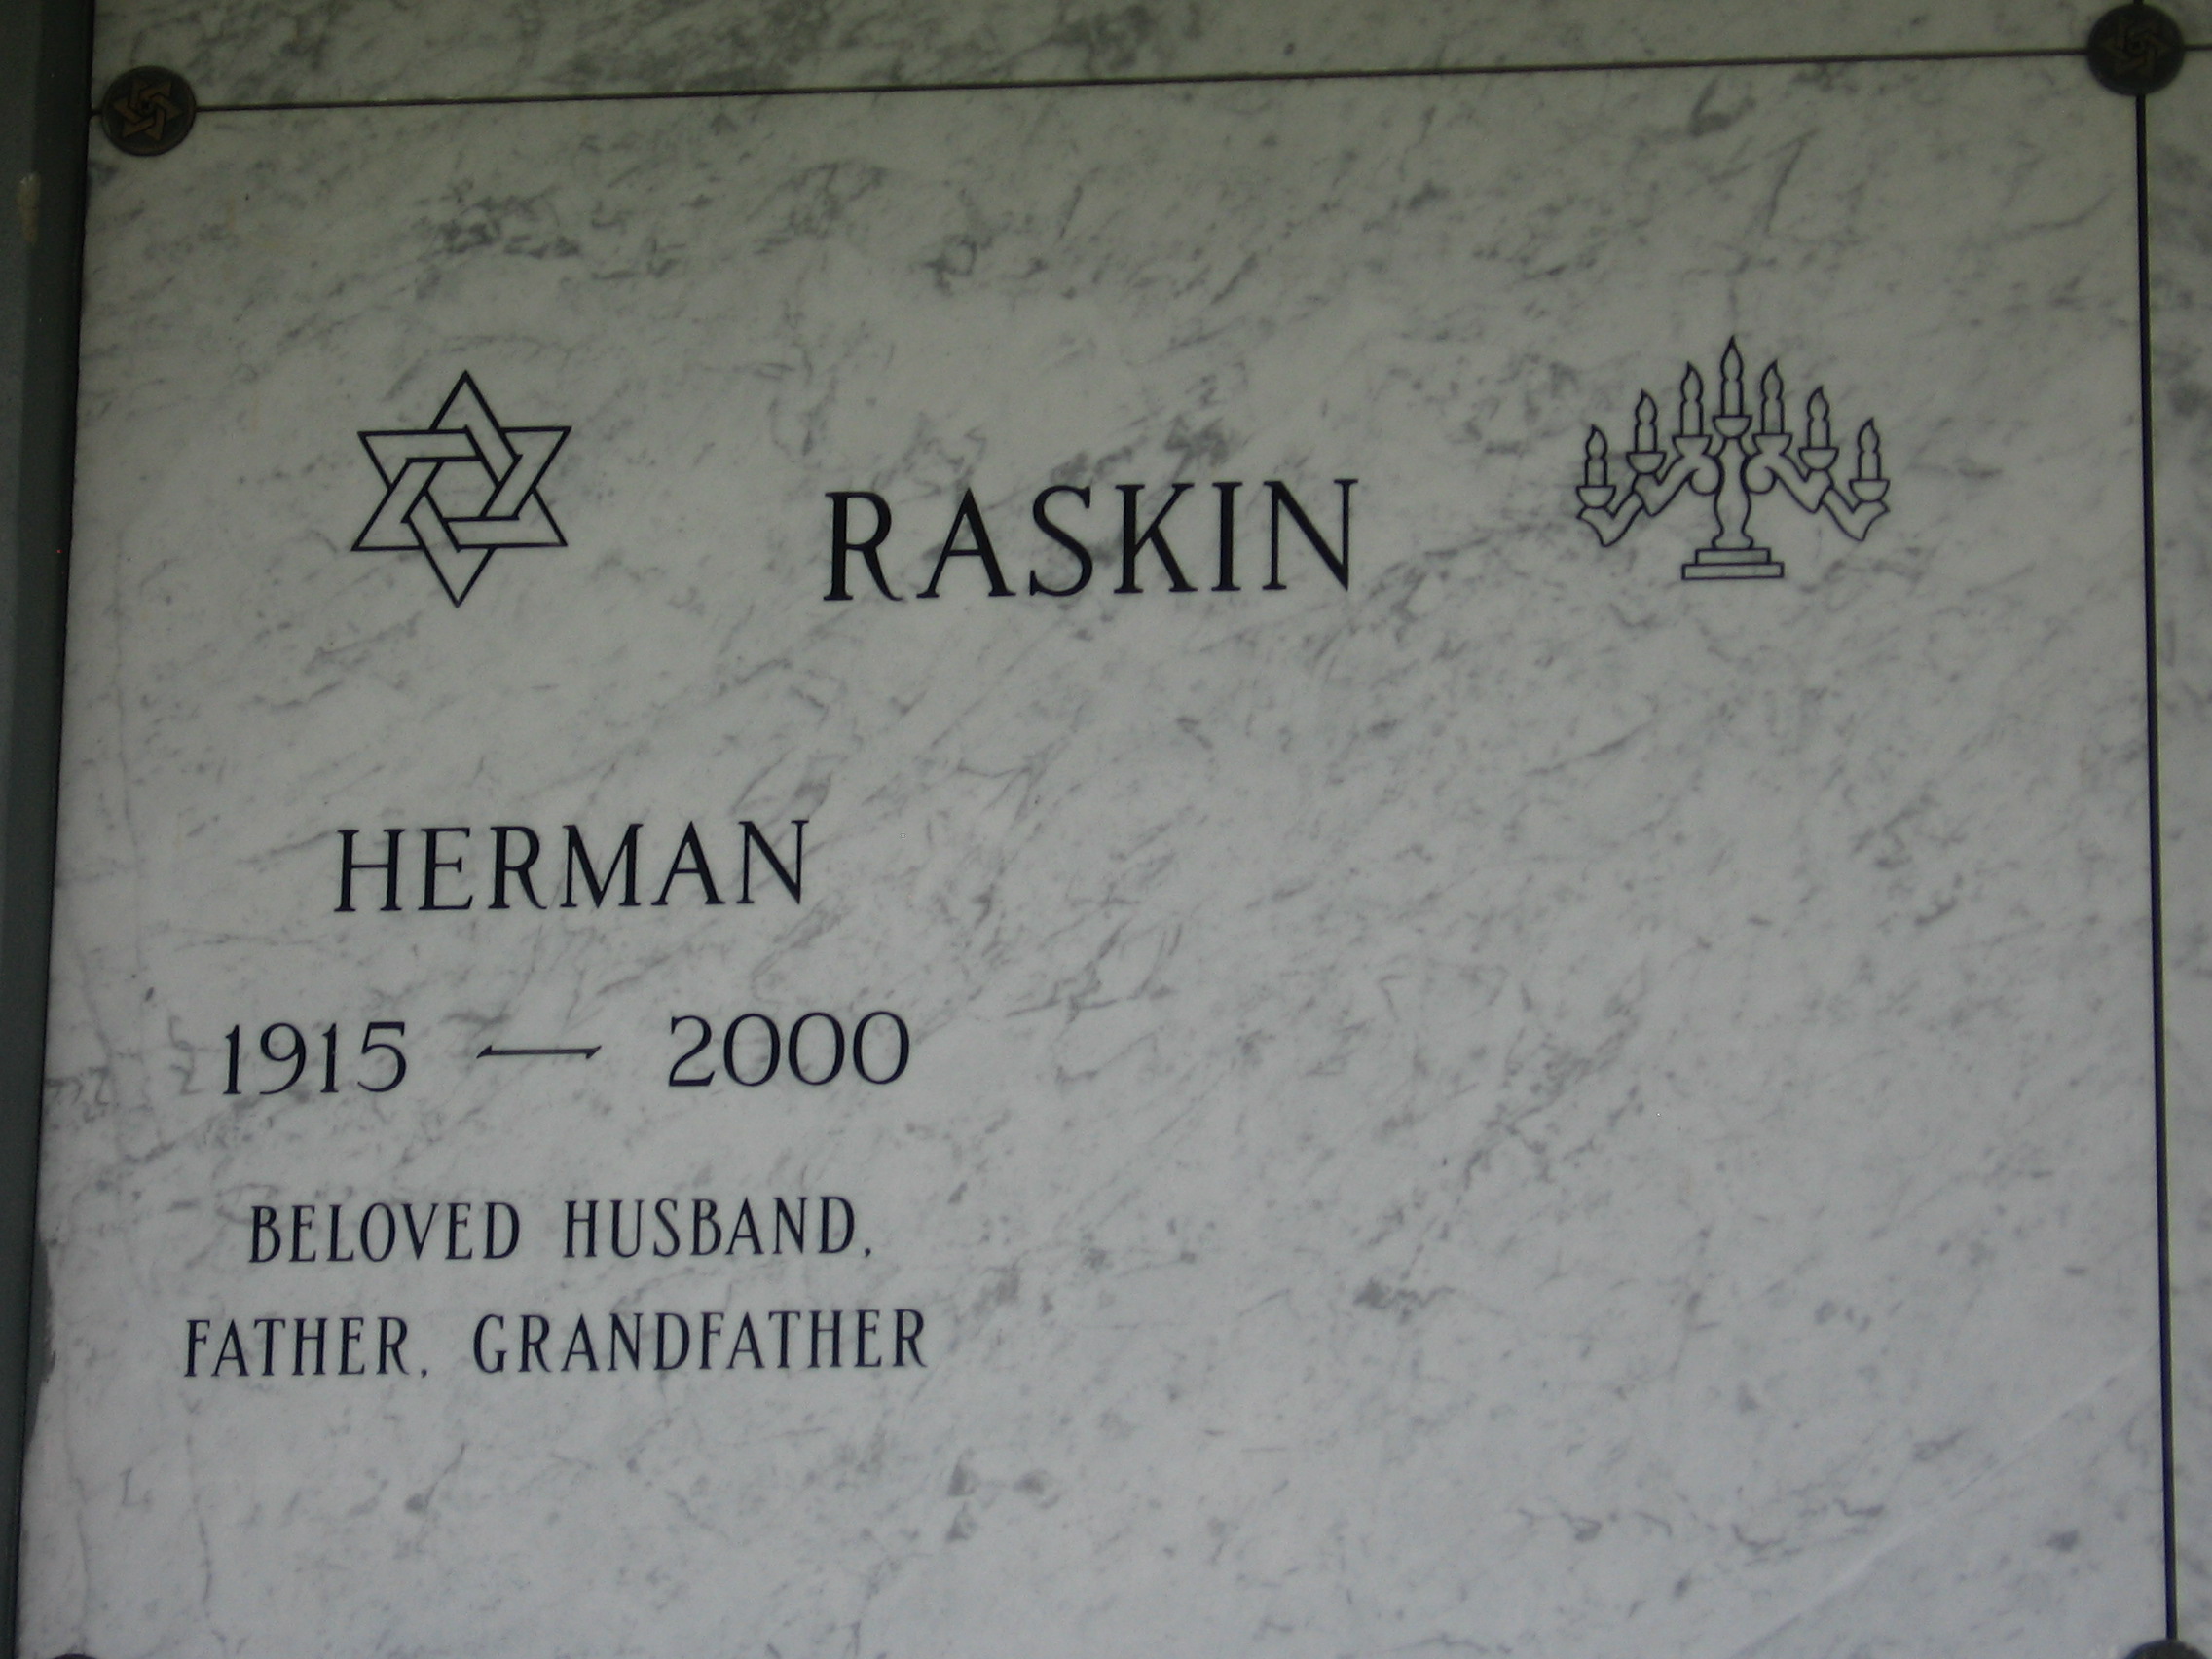 Herman Raskin